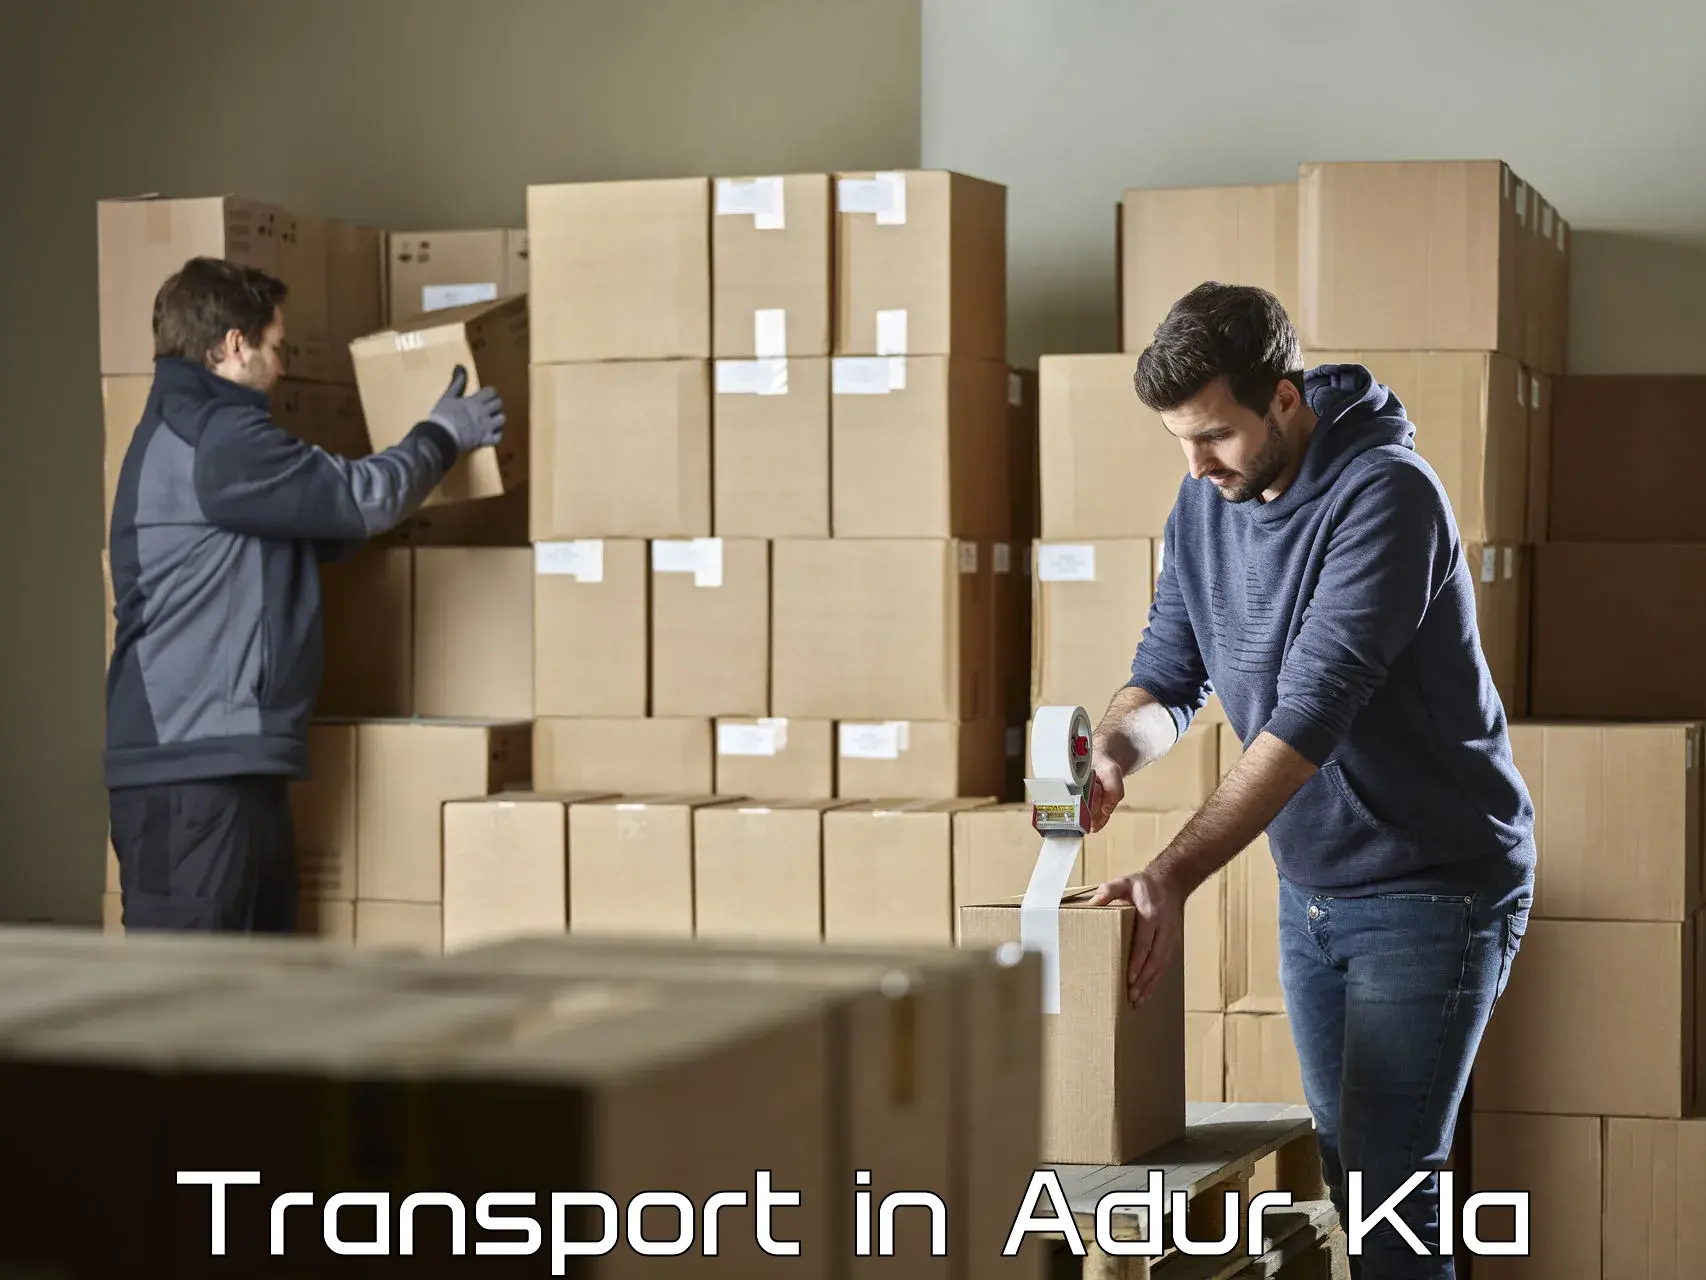 Transport in sharing in Adur Kla